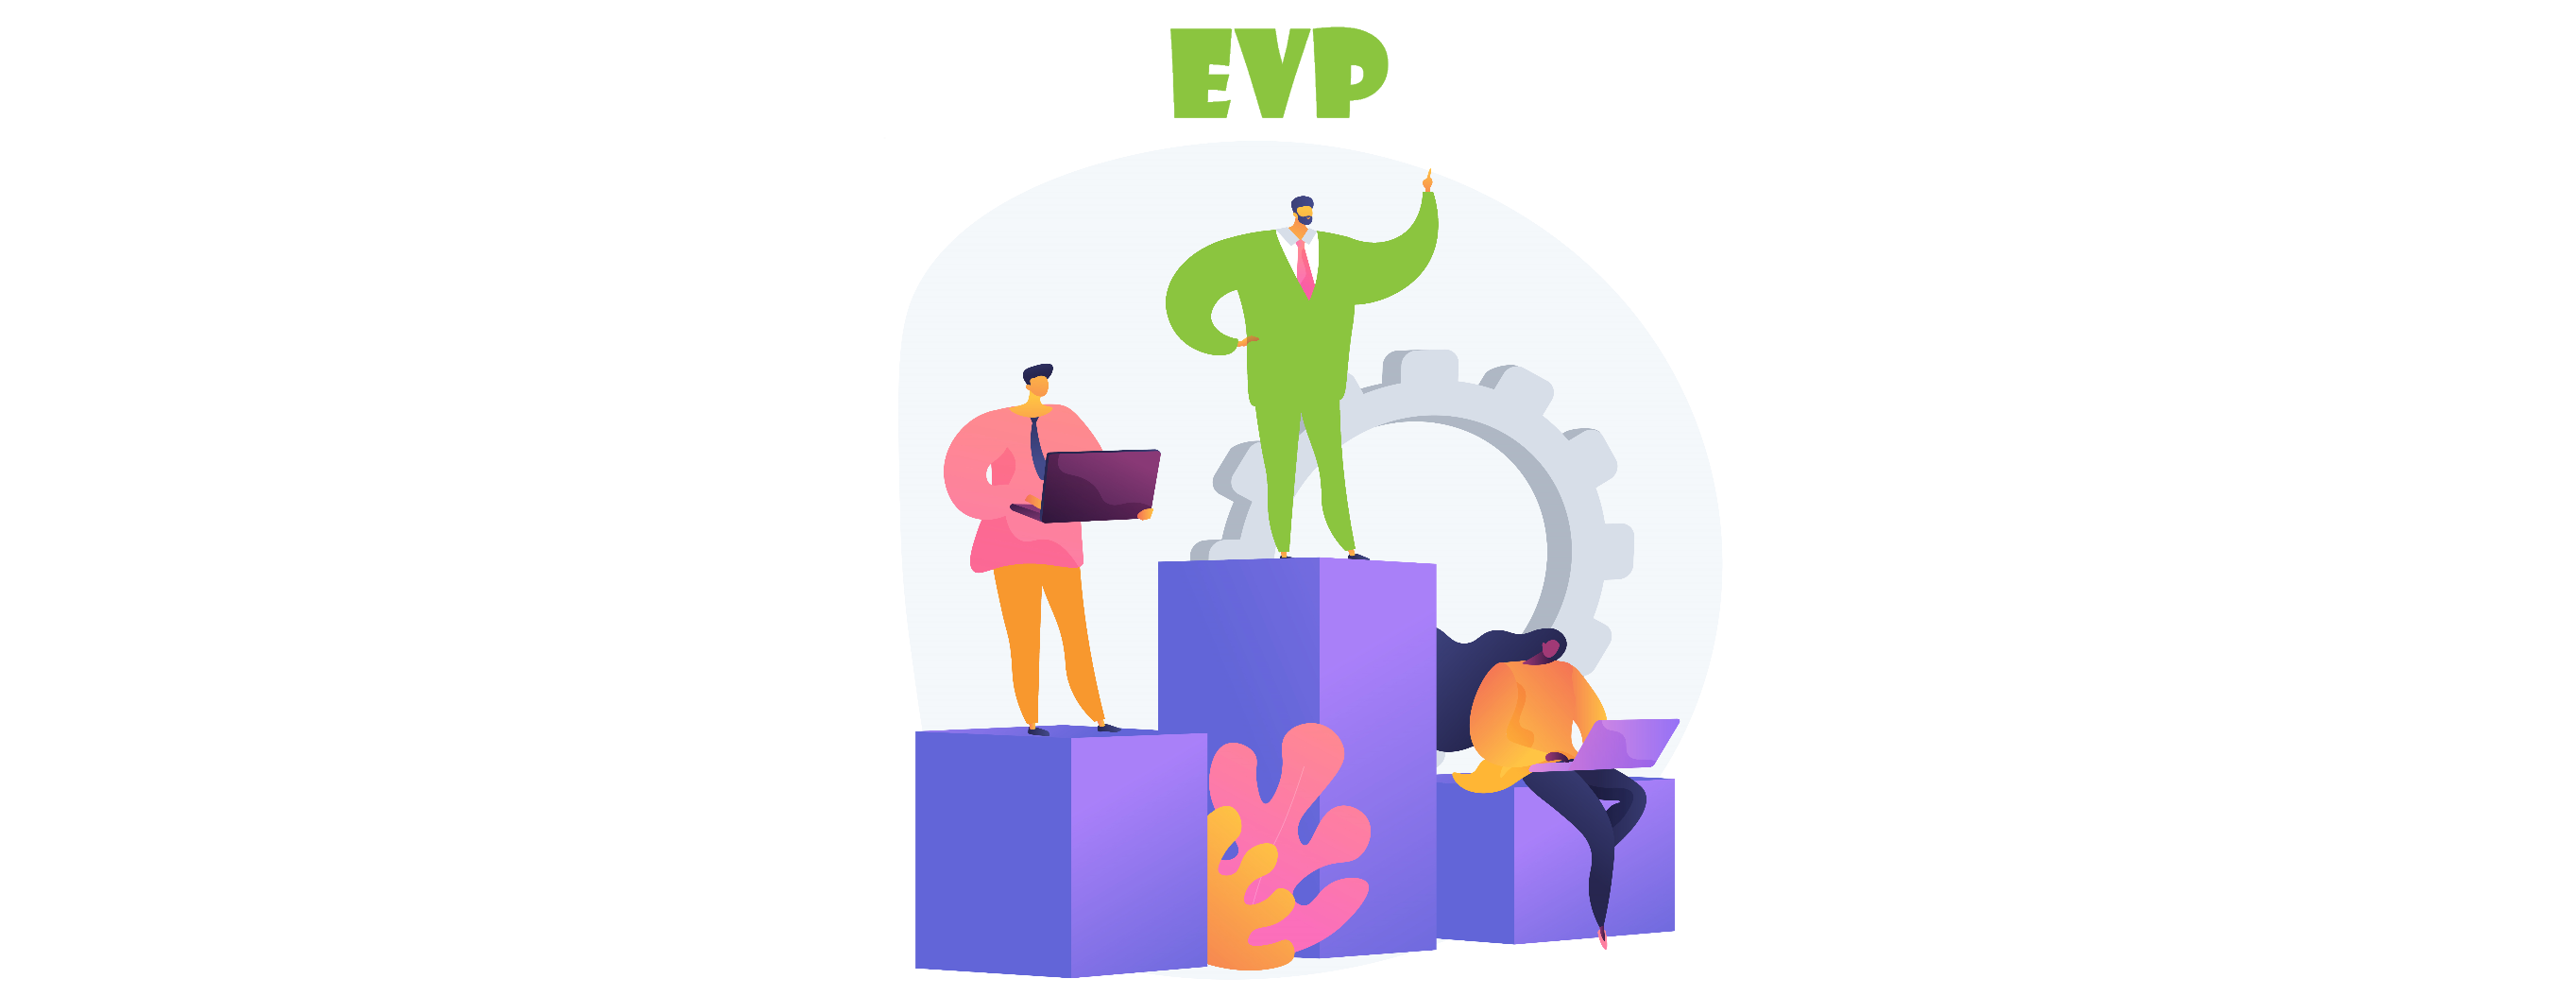 Разработка EVP (уникального ценностного предложения работодателя)